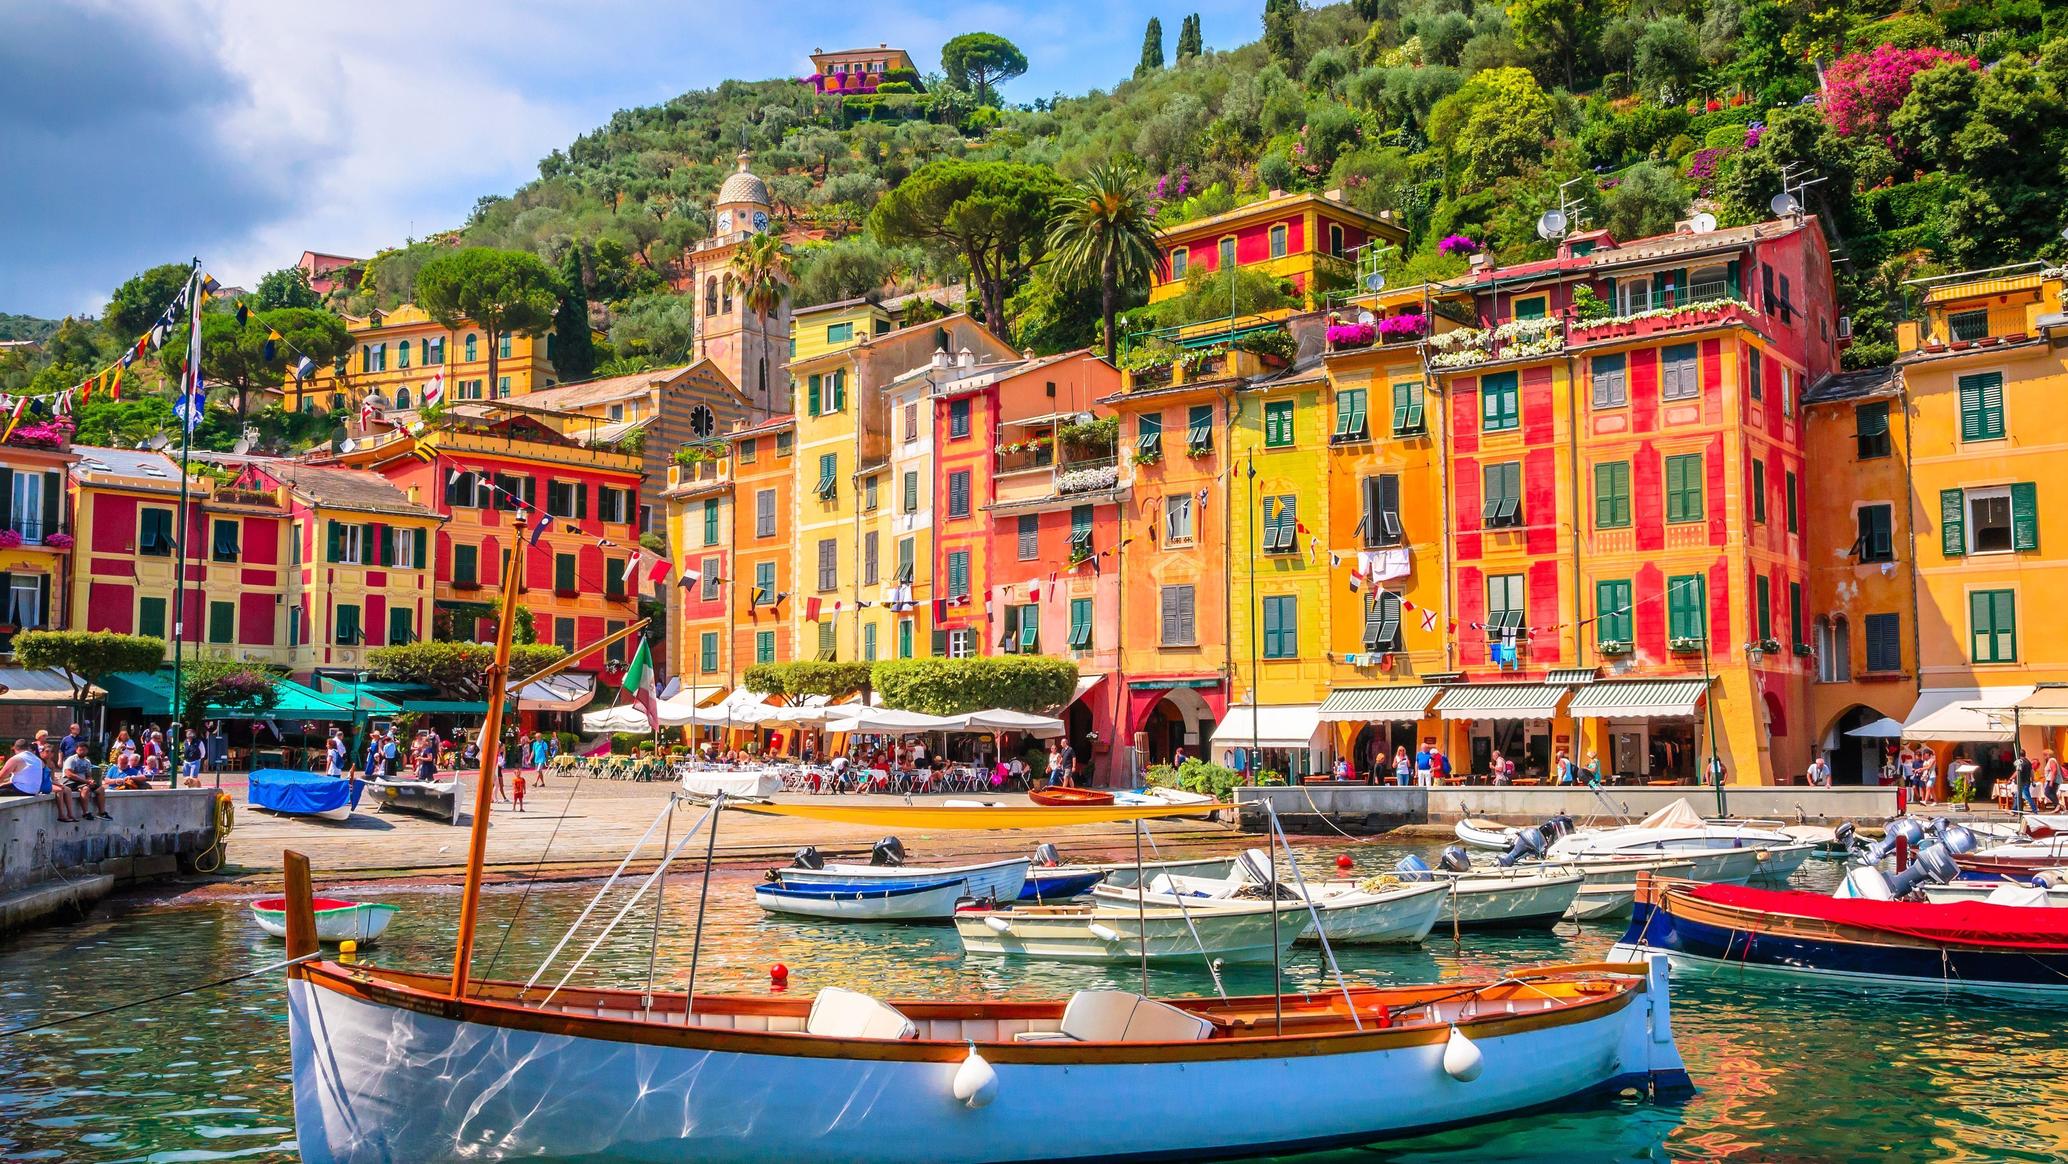 Vacanta in Genova si Portofino – 179 euro (zbor si cazare 4 nopti)